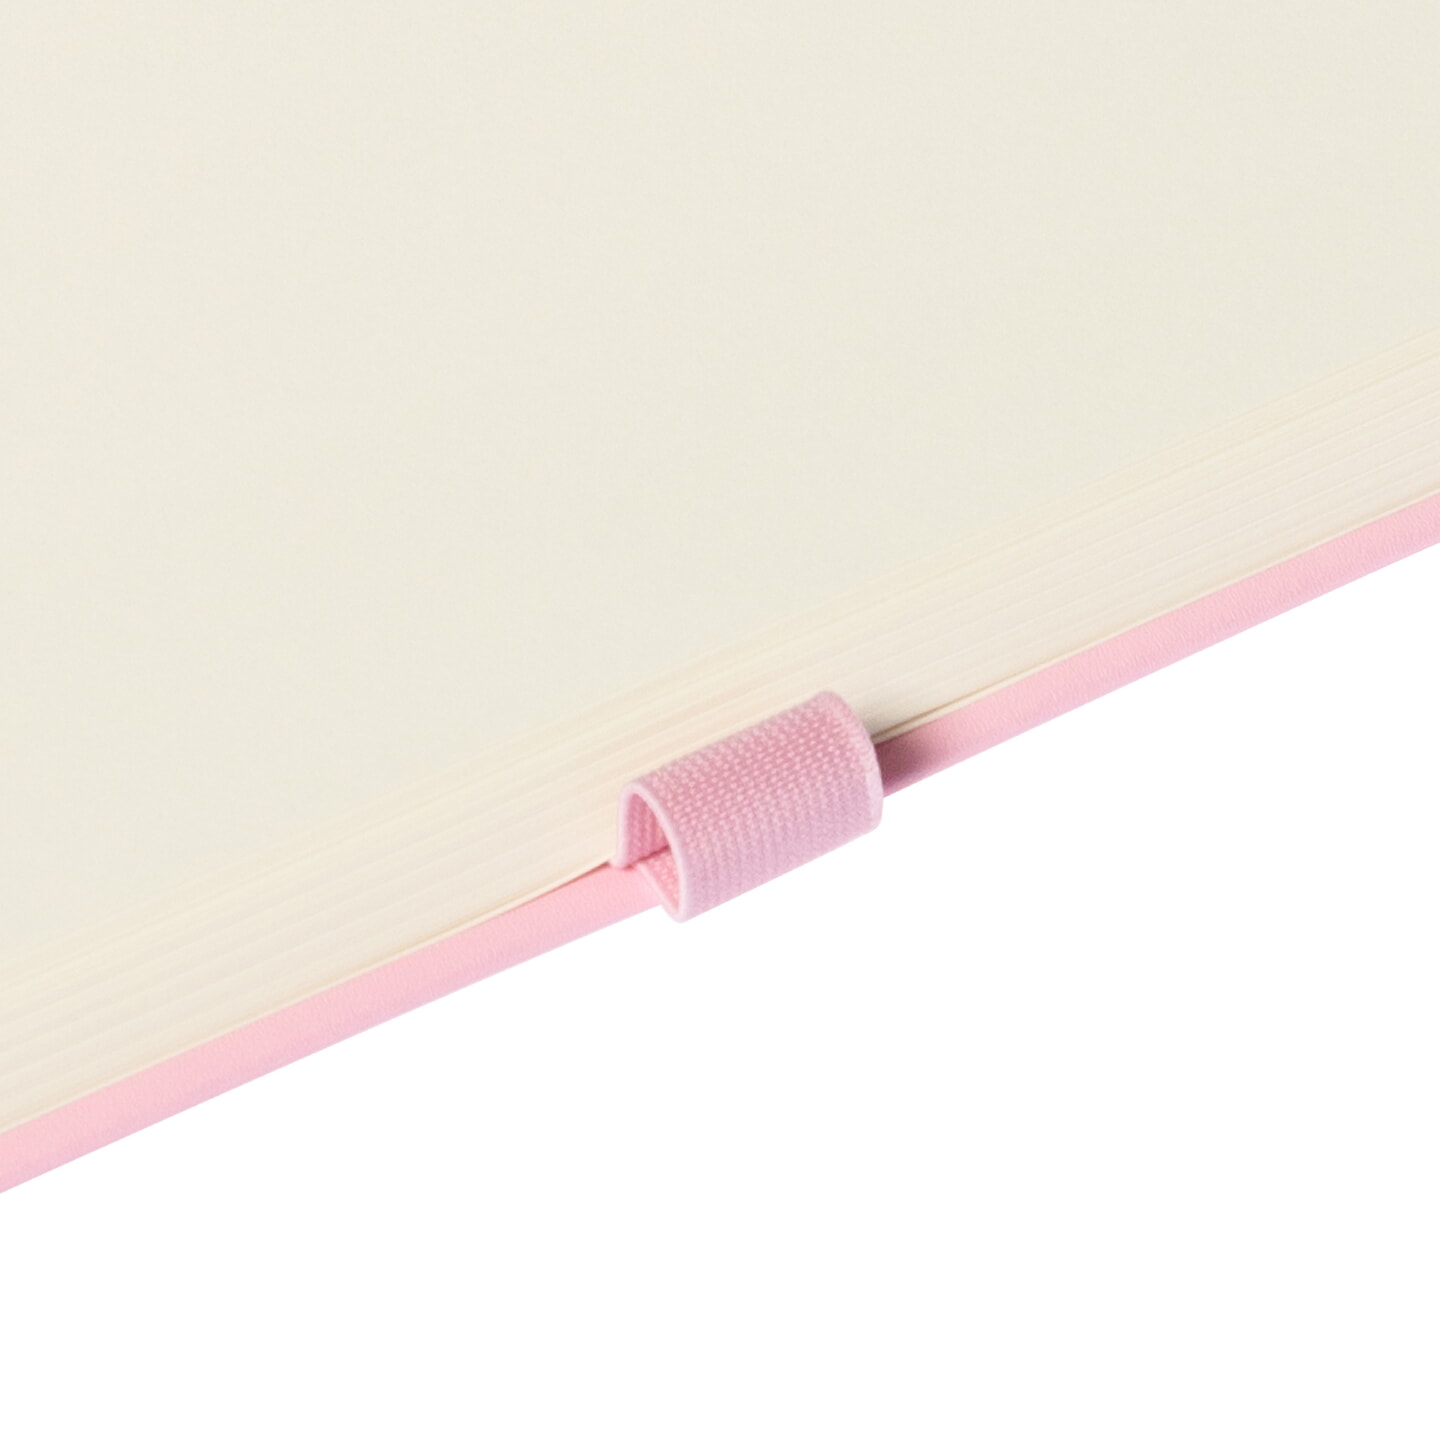 Блокнот для зарисовок Sketchmarker 140г/кв.м 20*20cм 80л твердая обложка Розовый